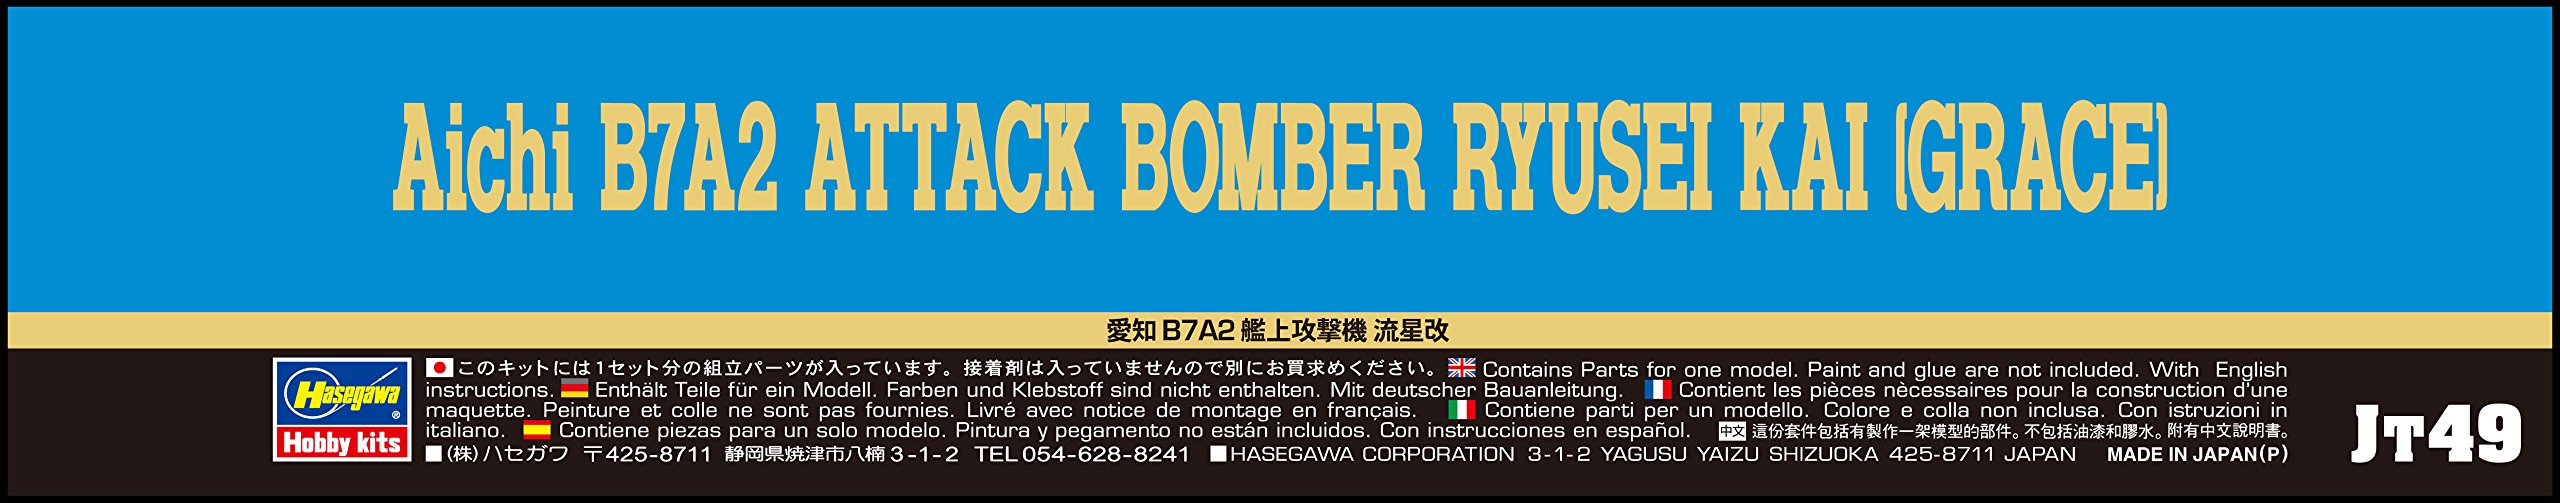 HASEGAWA 1/48 Aichi B7A2 Attaque Bomber Ryusei Kai Grace Plastique Modèle